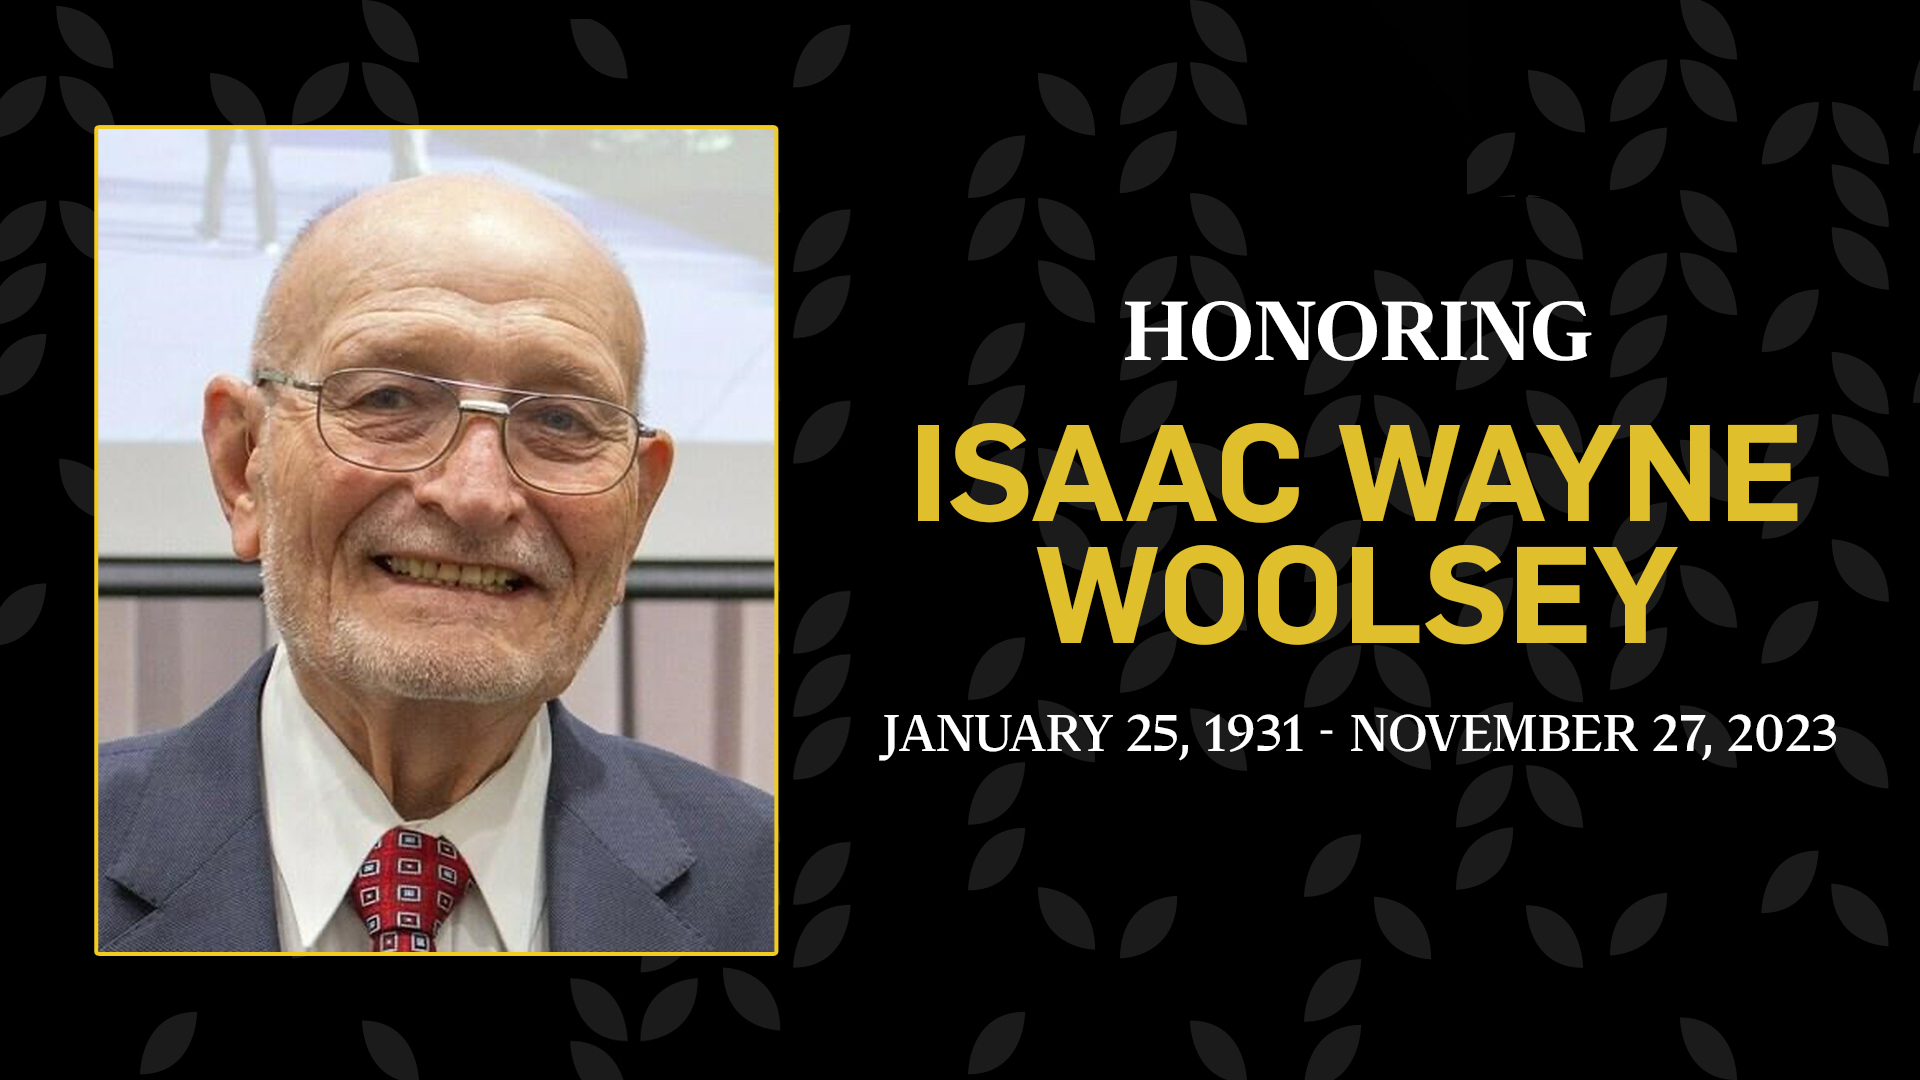 Honoring Isaac Wayne Woolsey, January 25, 1931 to November 27, 2023.